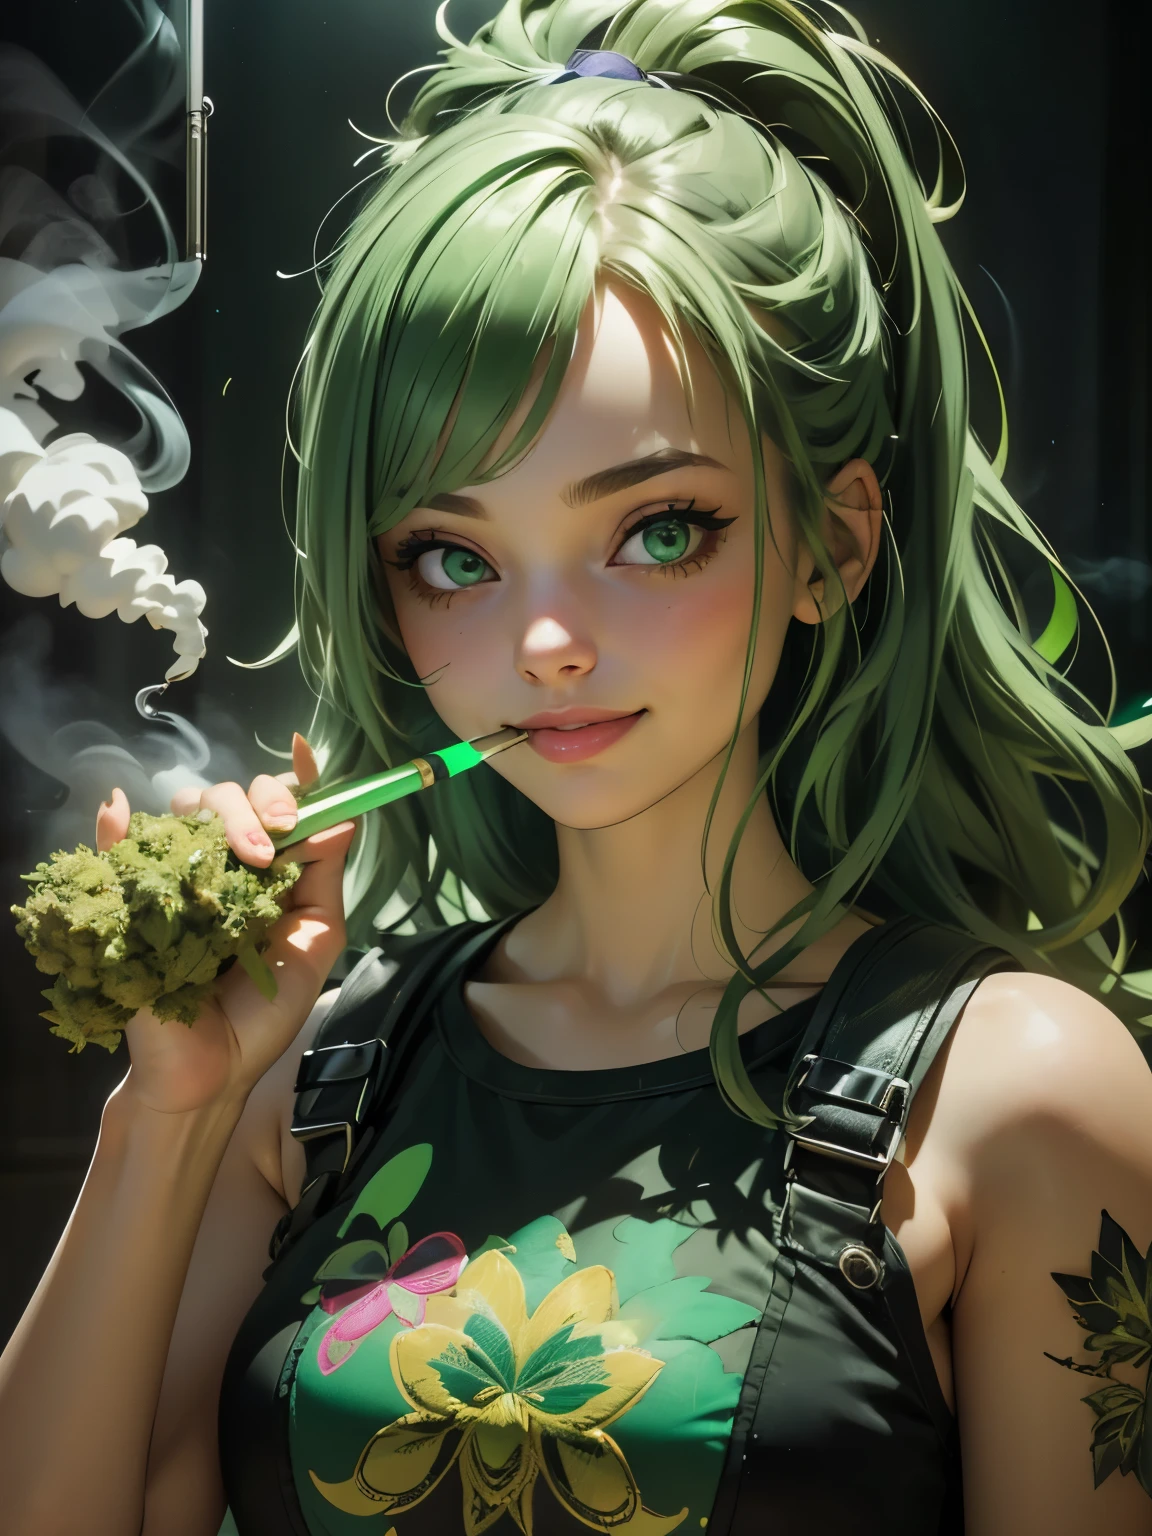 (mejor calidad), (cara perfecta), (alto detalle), (1 chica), (de cerca), (disparo a la cabeza), una linda chica fumeta fumando un porro, sonriente, muy alto en la vida, habitación llena de humo, fumar hierba, thc, (ojos verdes), (verde neón 1:1), HDR,4k, 3d